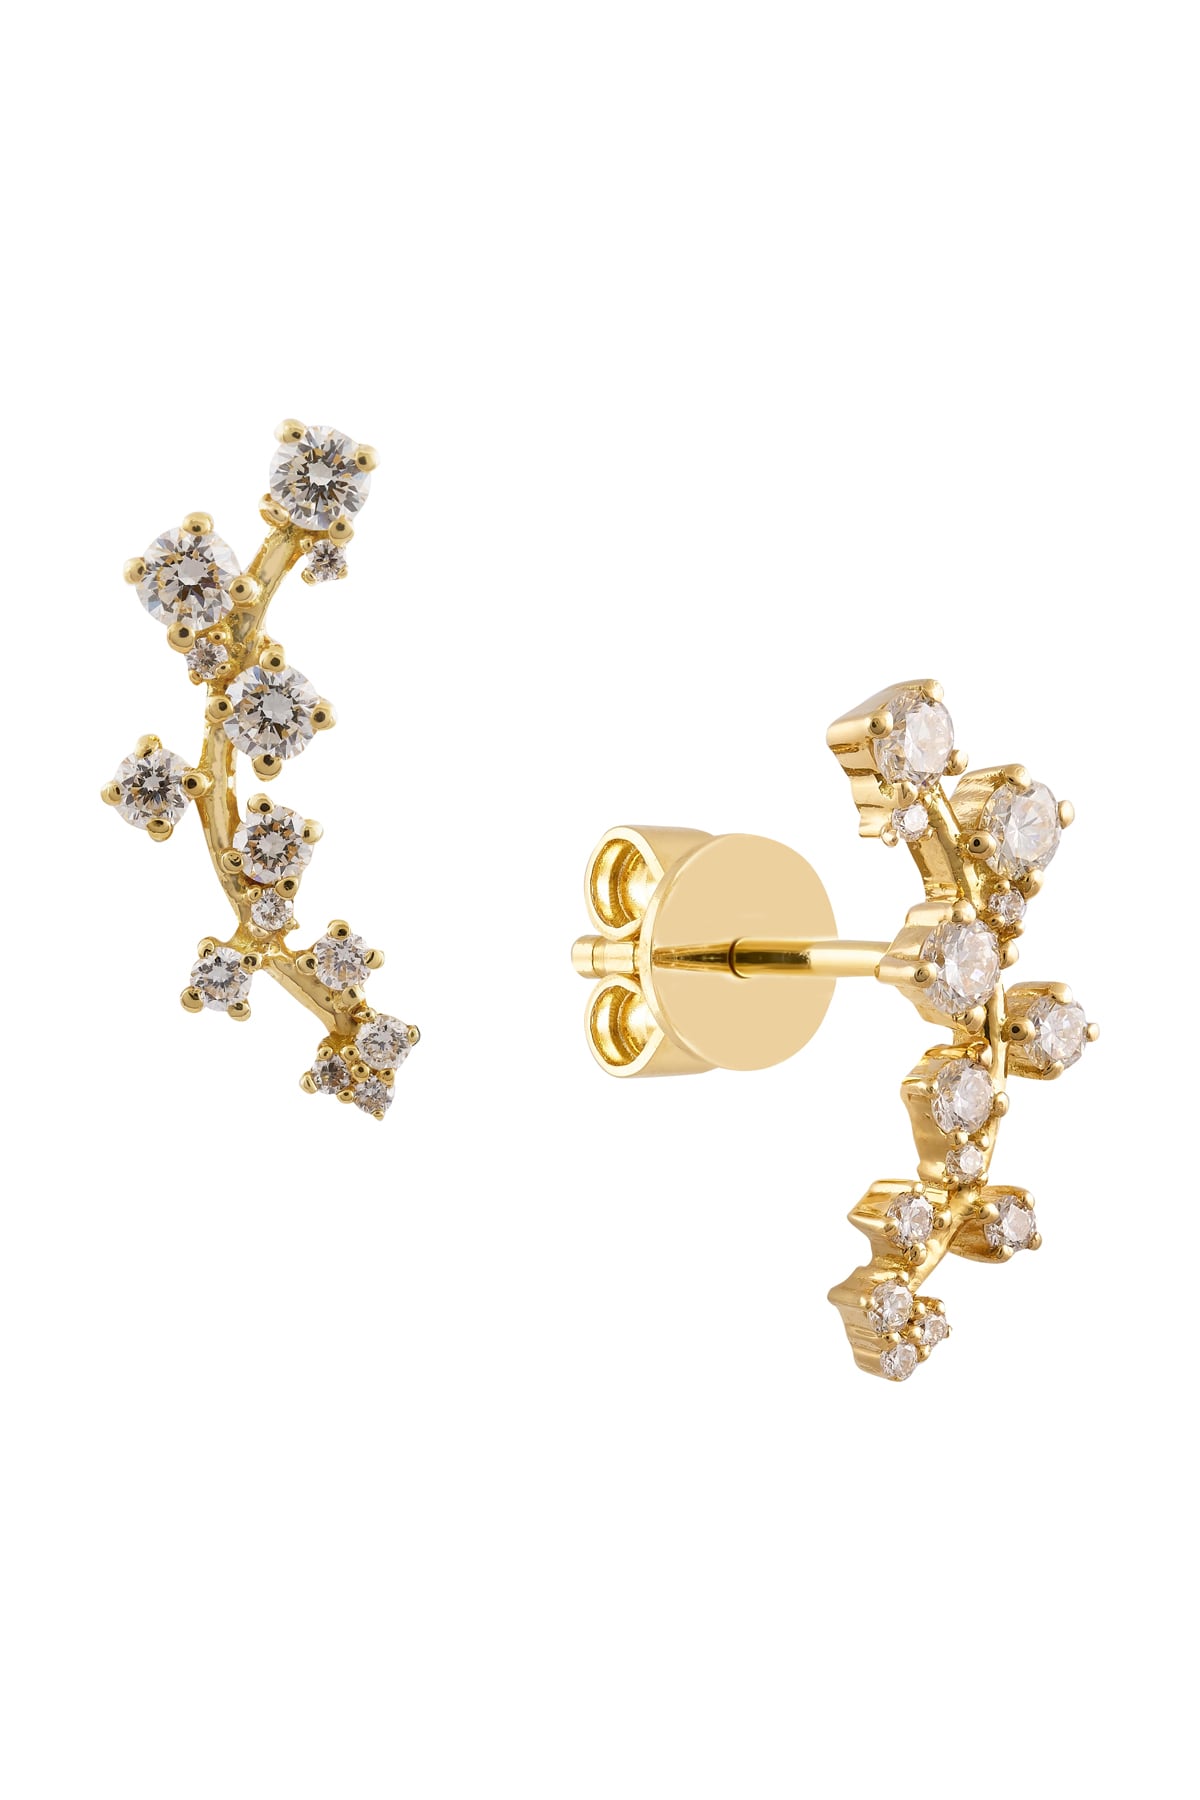 Multi Stone Fancy Diamond Stud Earrings In Yellow Gold from LeGassick Jewellery.